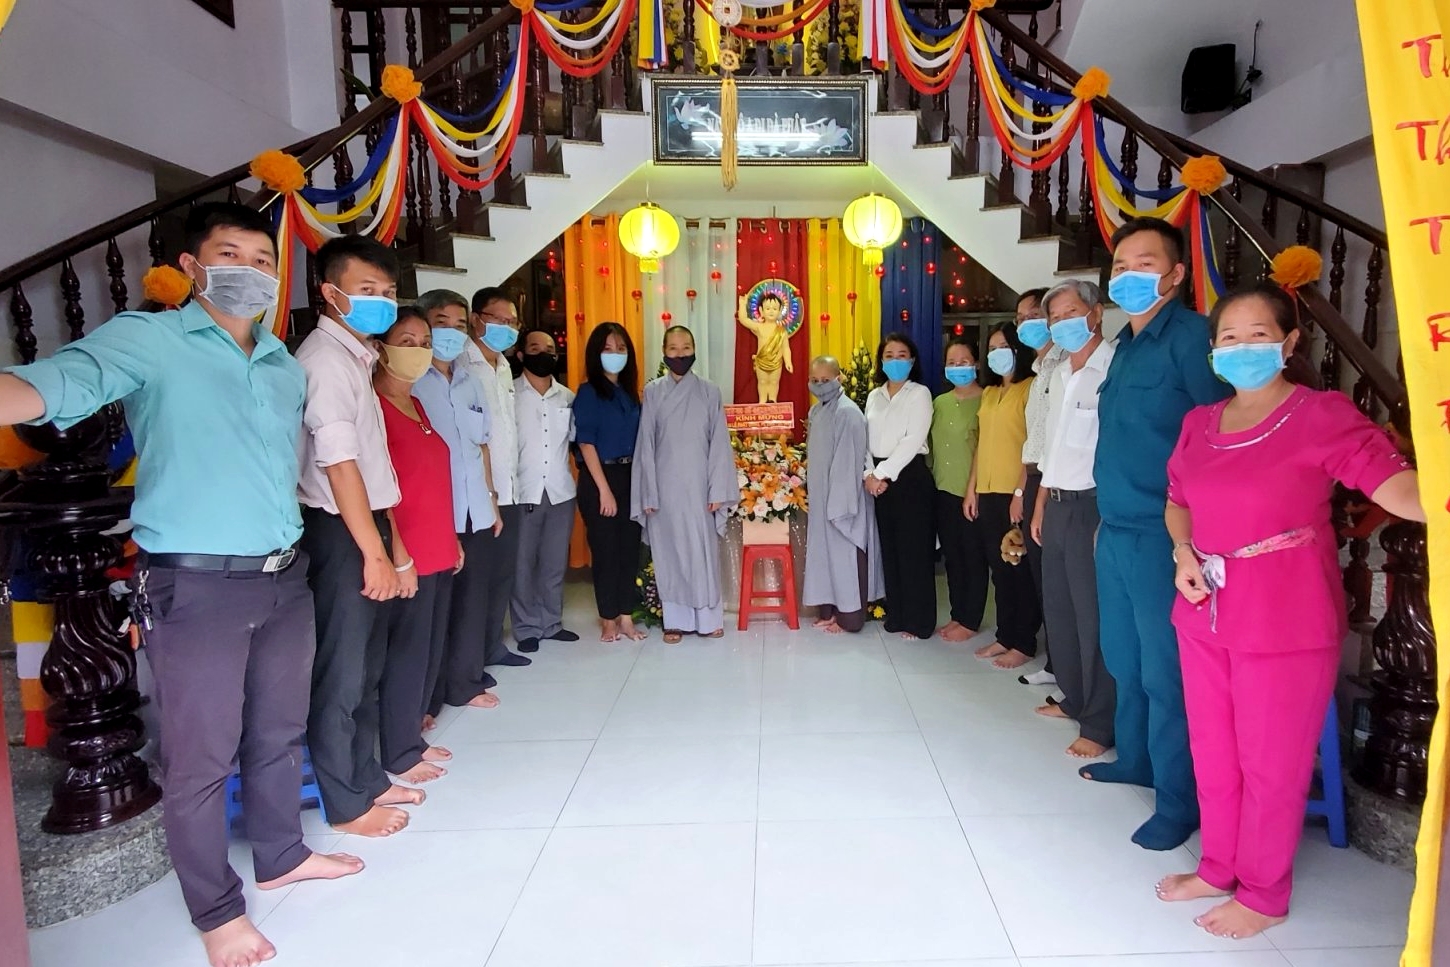 Image: Đảng ủy - HĐND - UBND - UB MTTQ VN Phường 10 thăm các cơ sở Tôn giáo nhân Đại lễ Phật đản PL 2564 - DL 2020